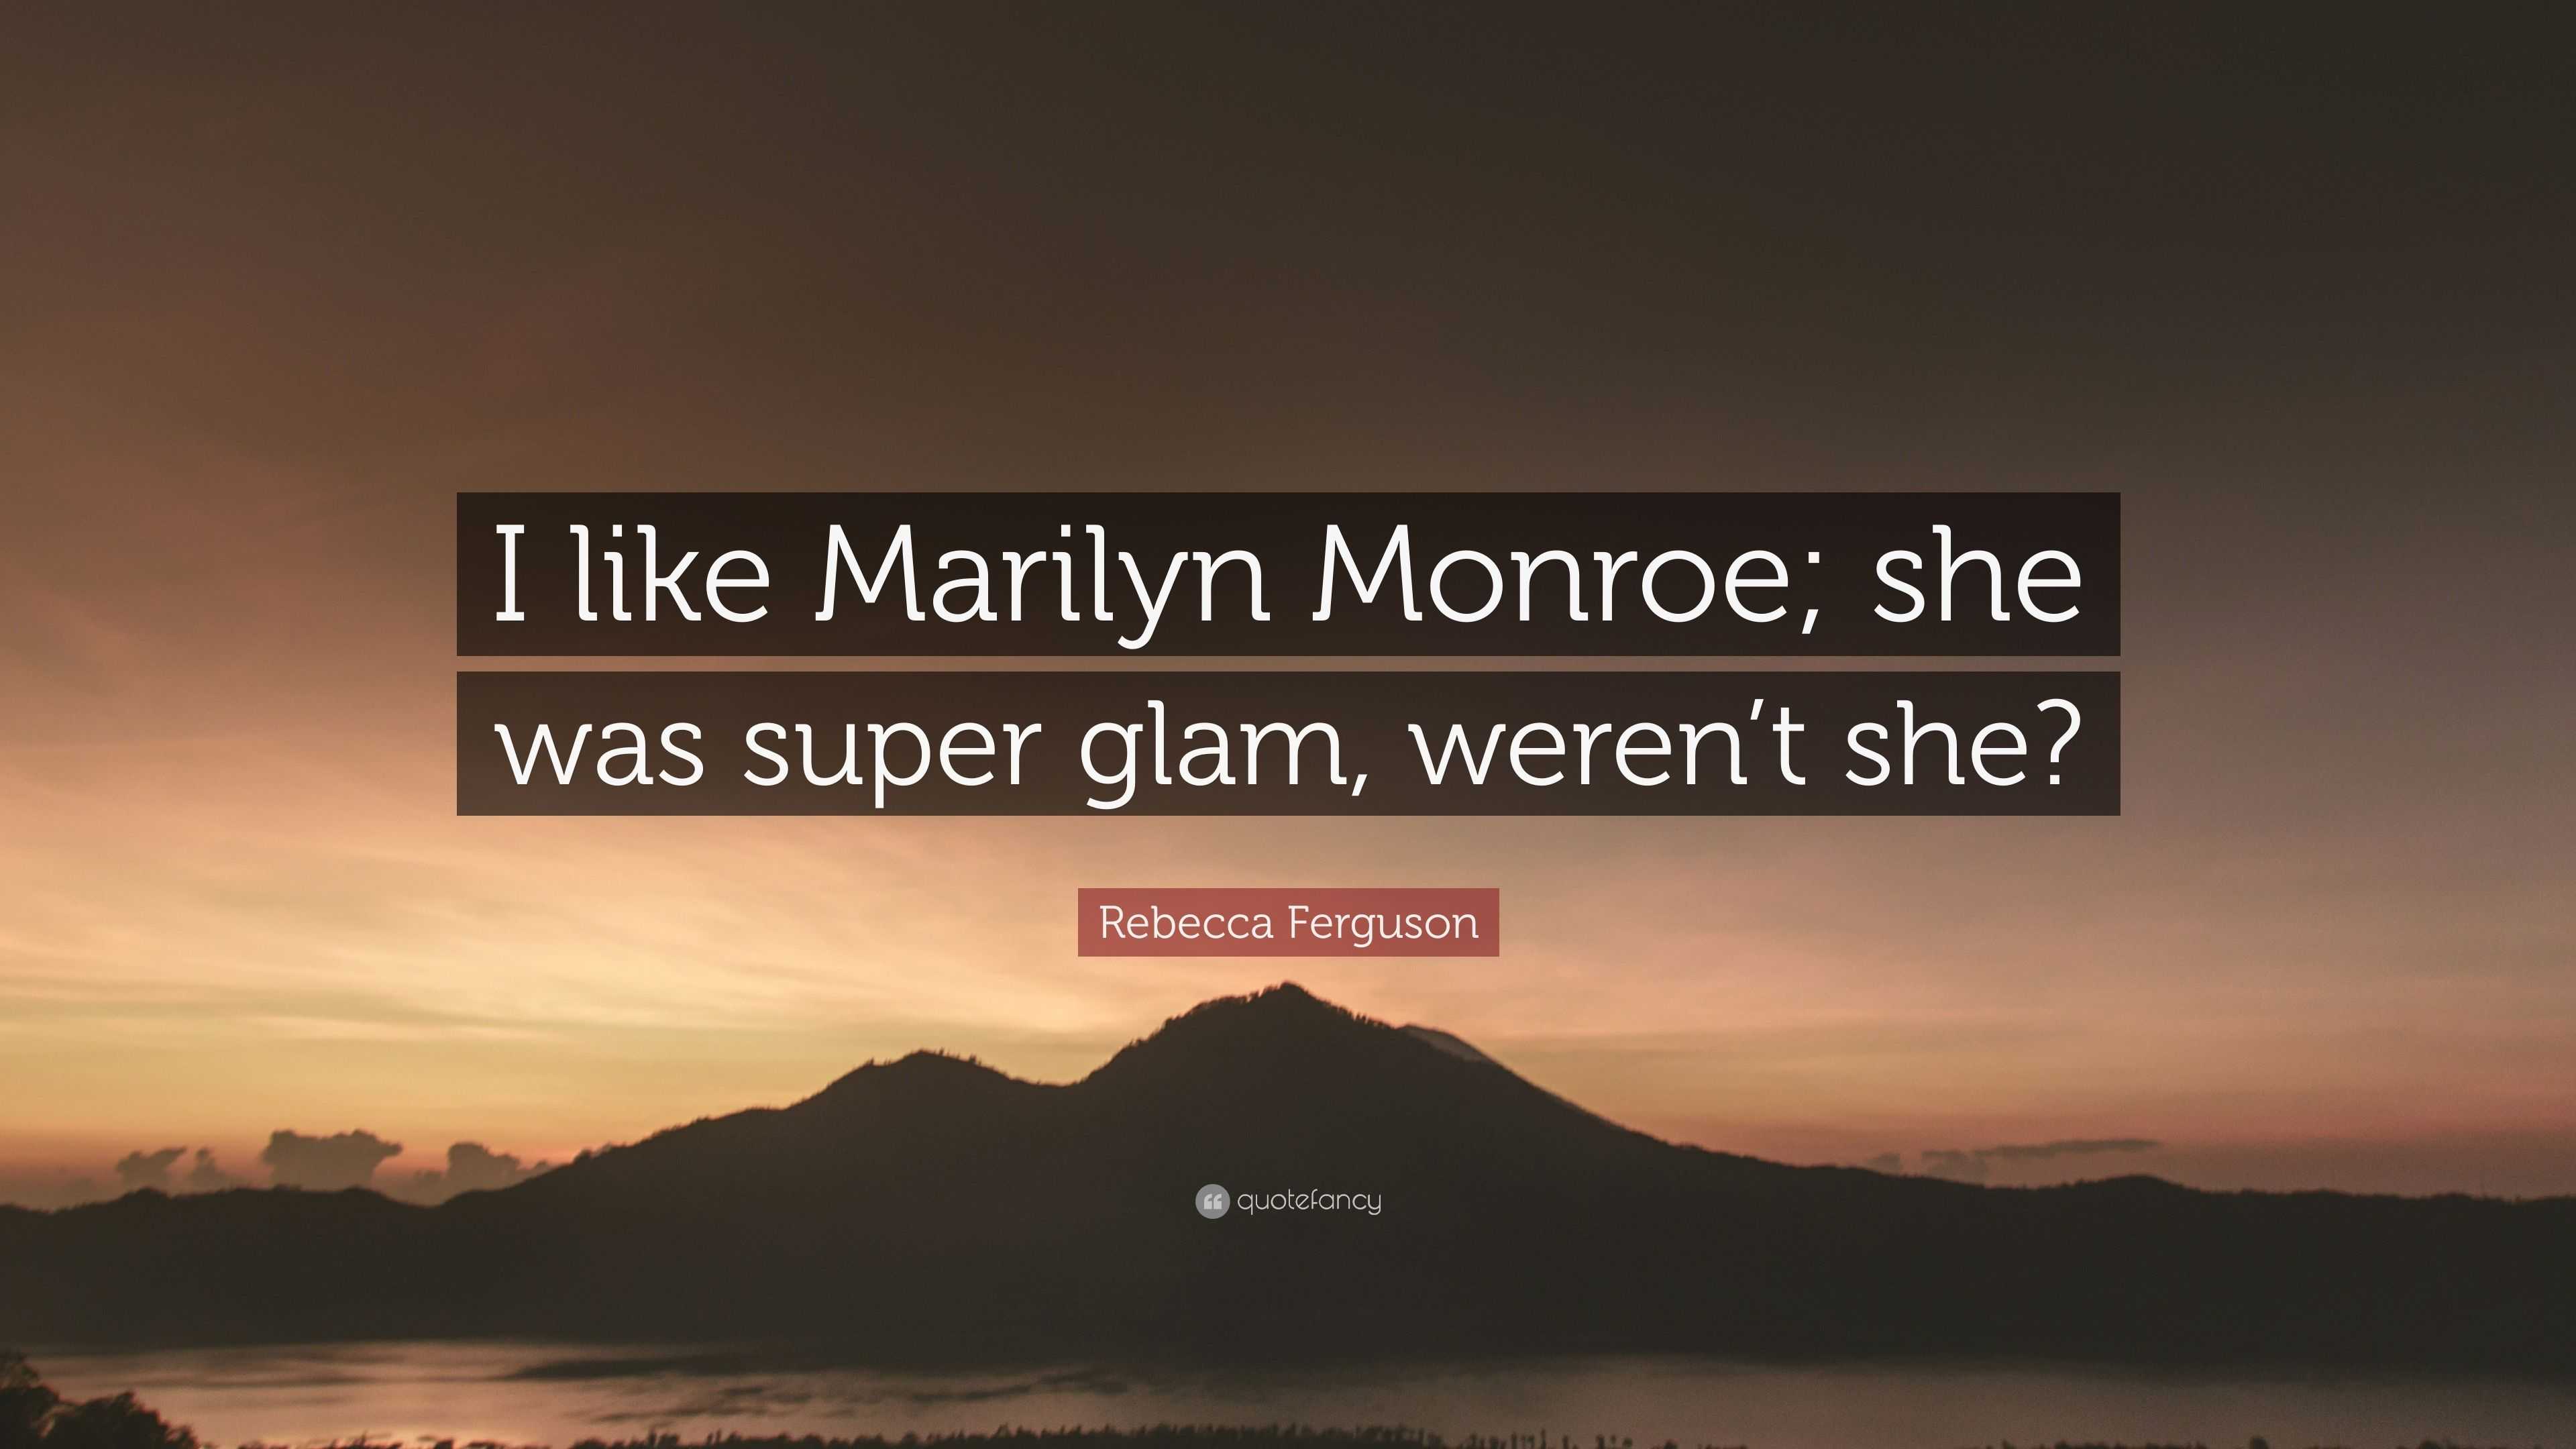 https://quotefancy.com/media/wallpaper/3840x2160/4086532-Rebecca-Ferguson-Quote-I-like-Marilyn-Monroe-she-was-super-glam.jpg